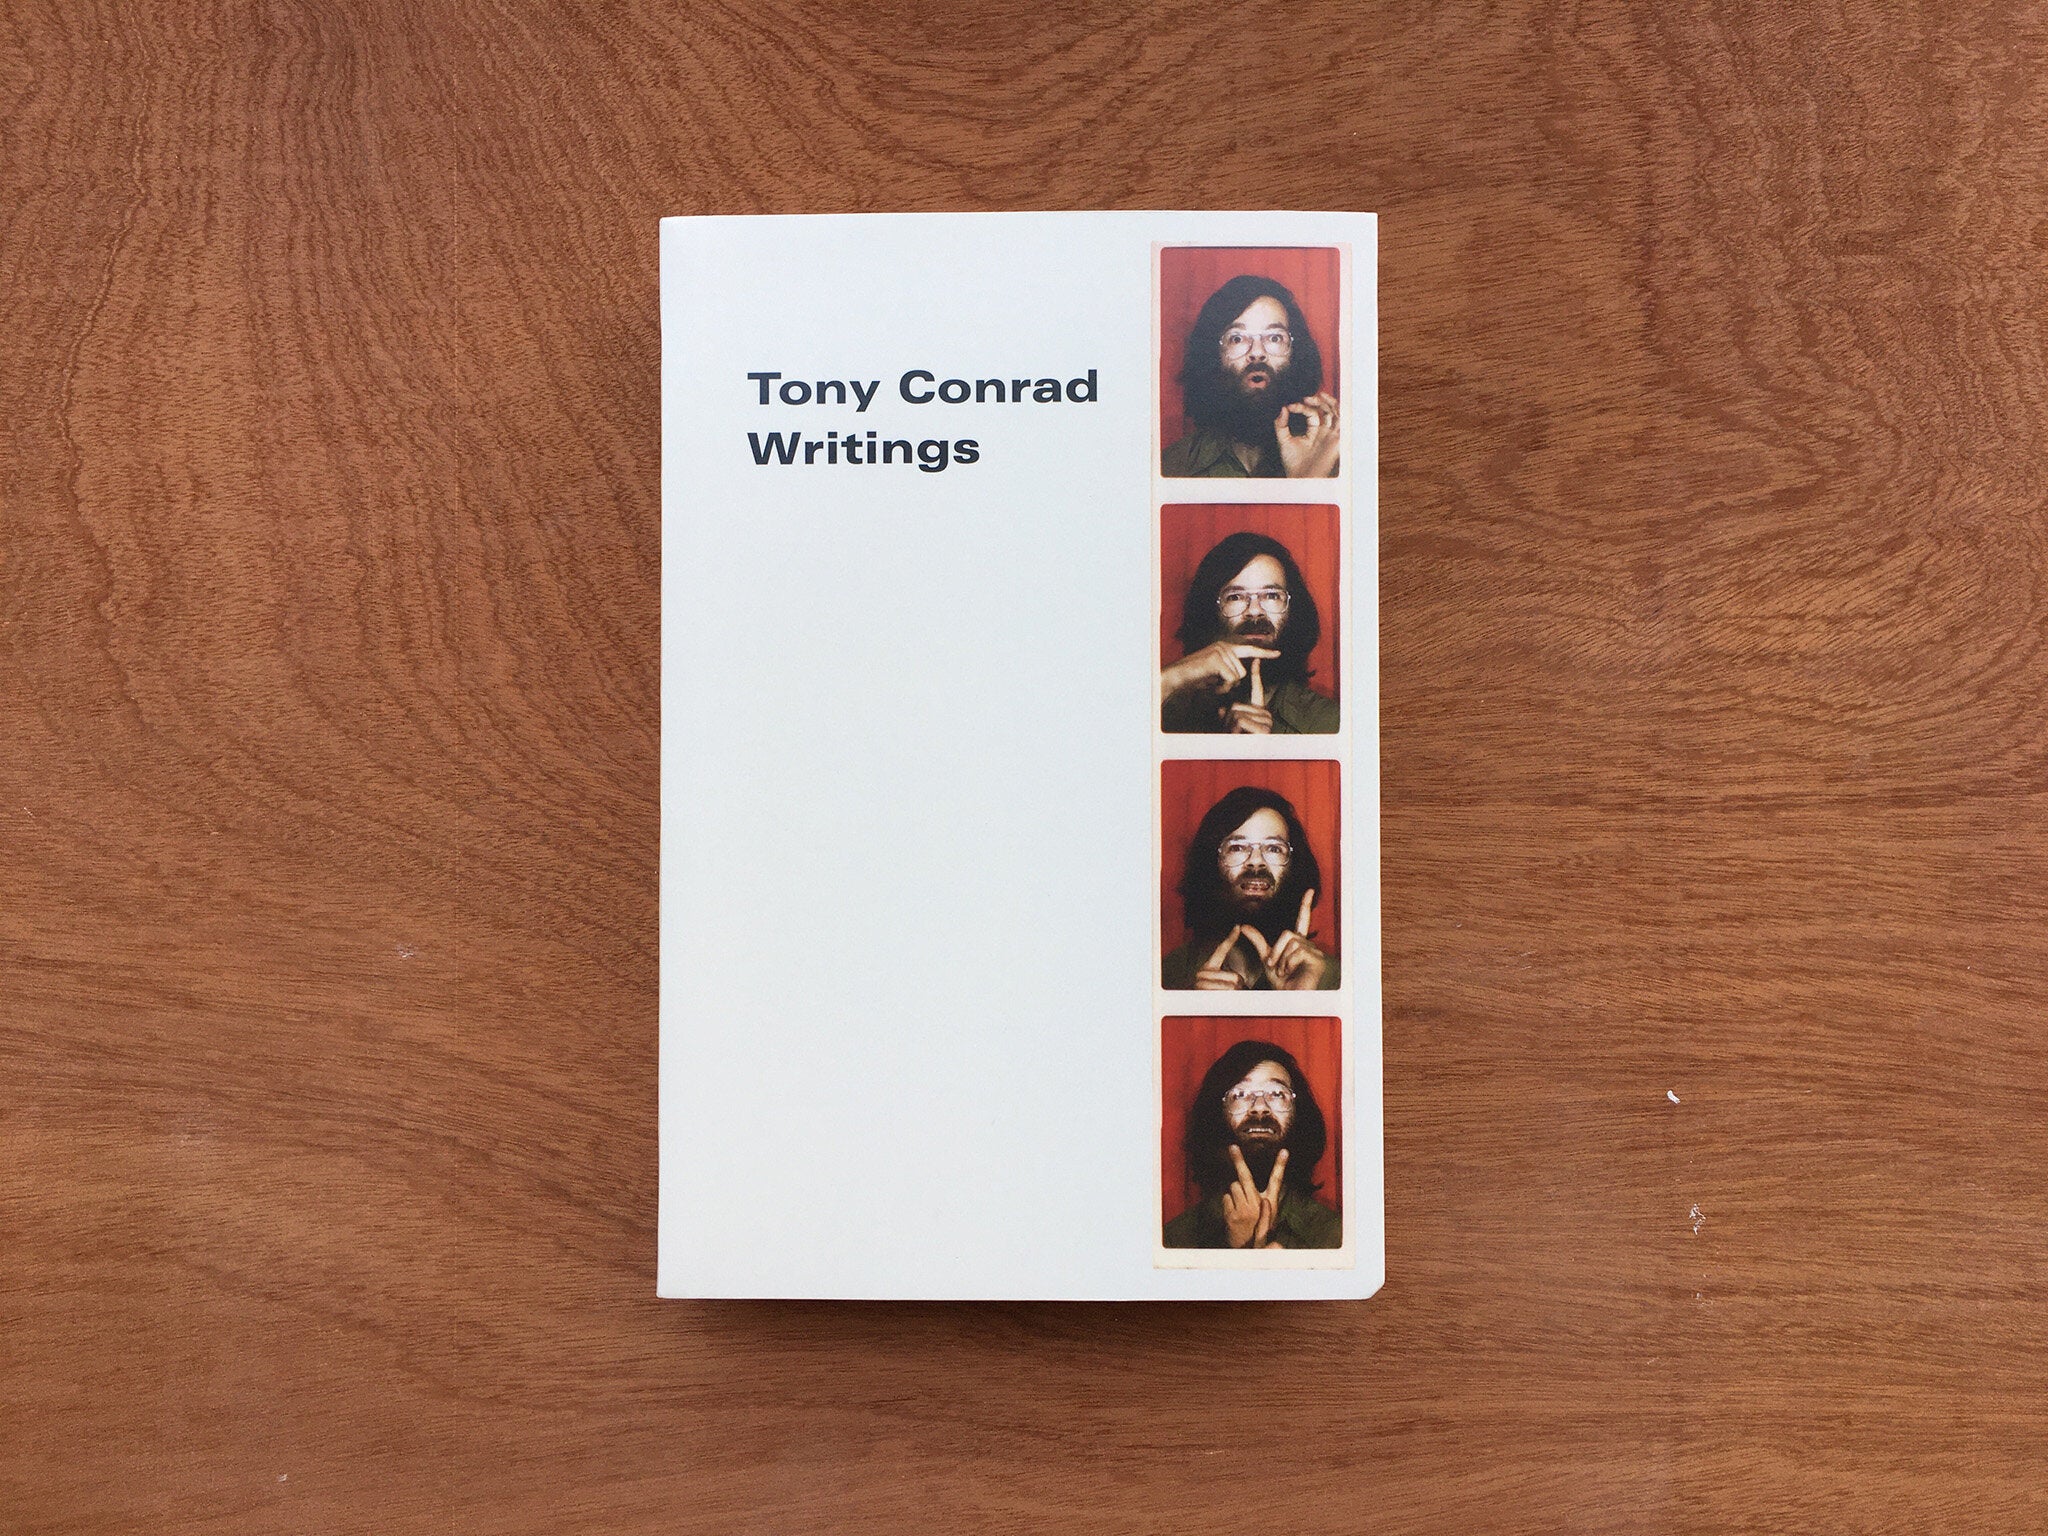 WRITINGS by Tony Conrad